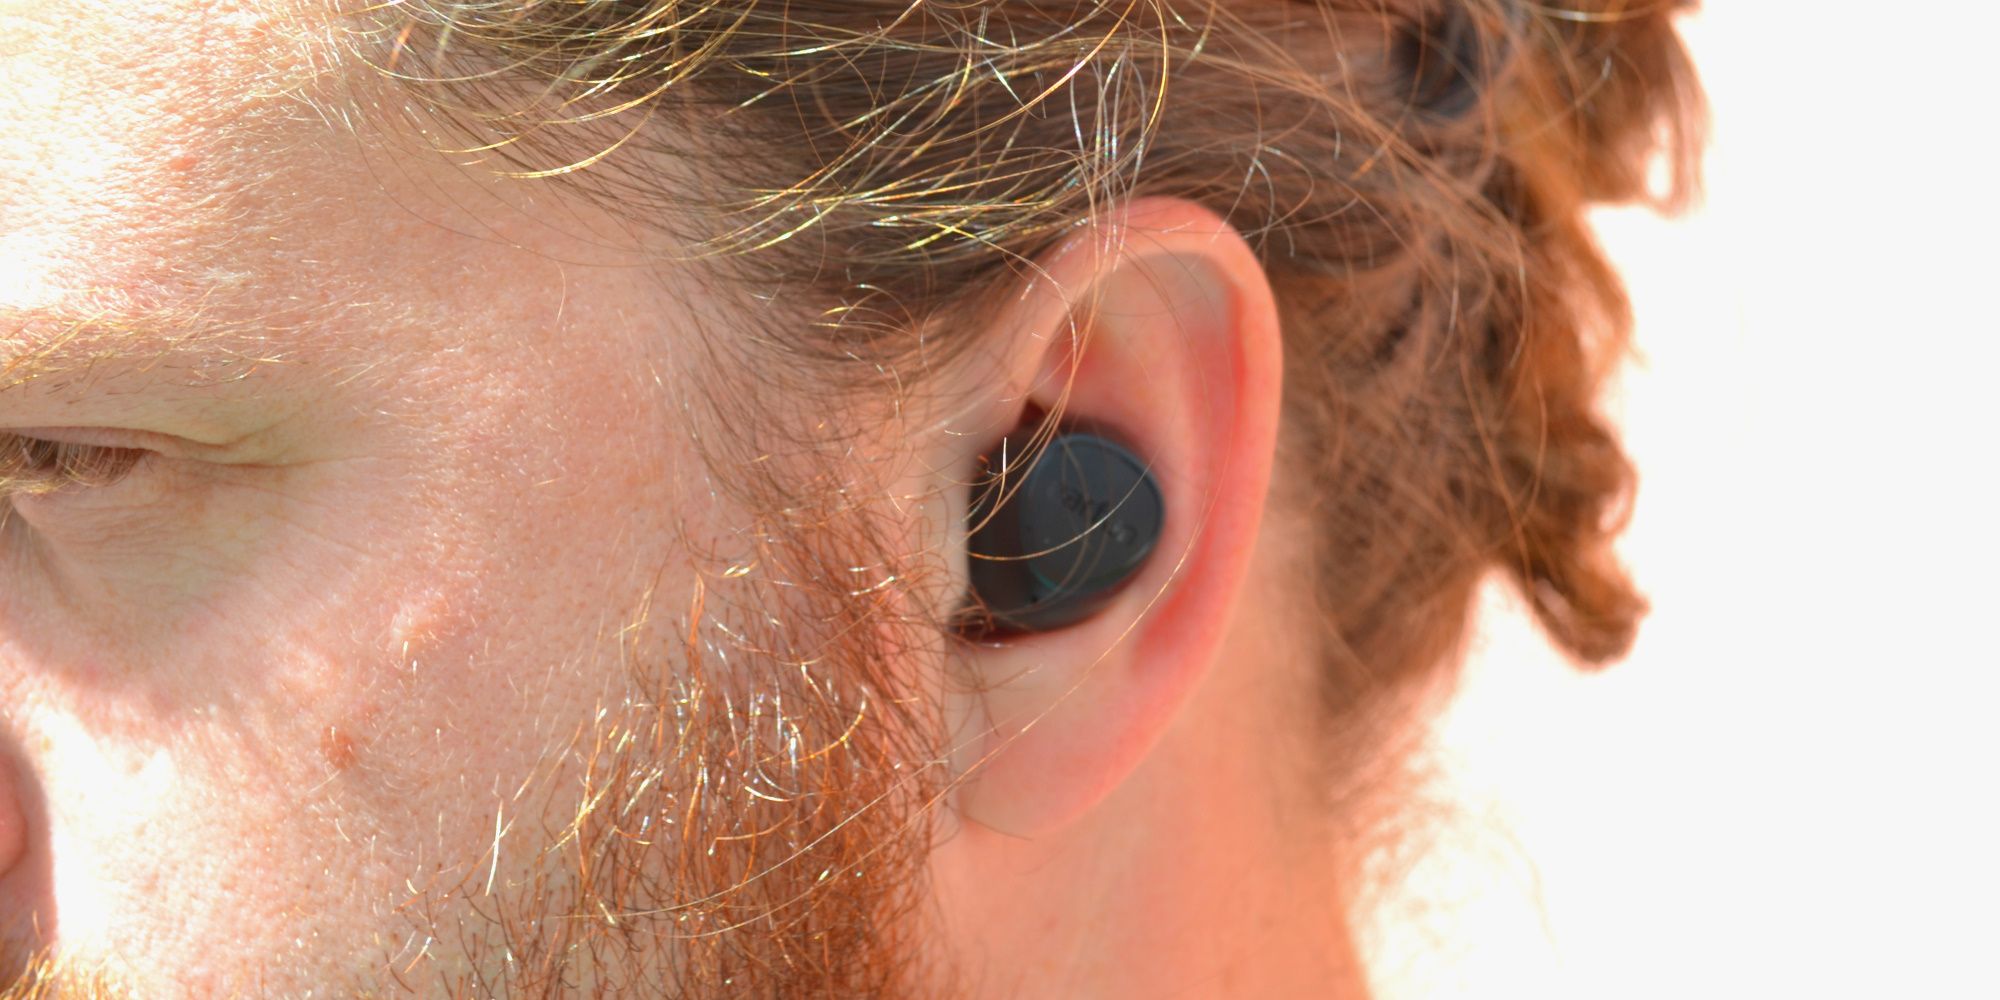 earfun free 2 earbuds in ear